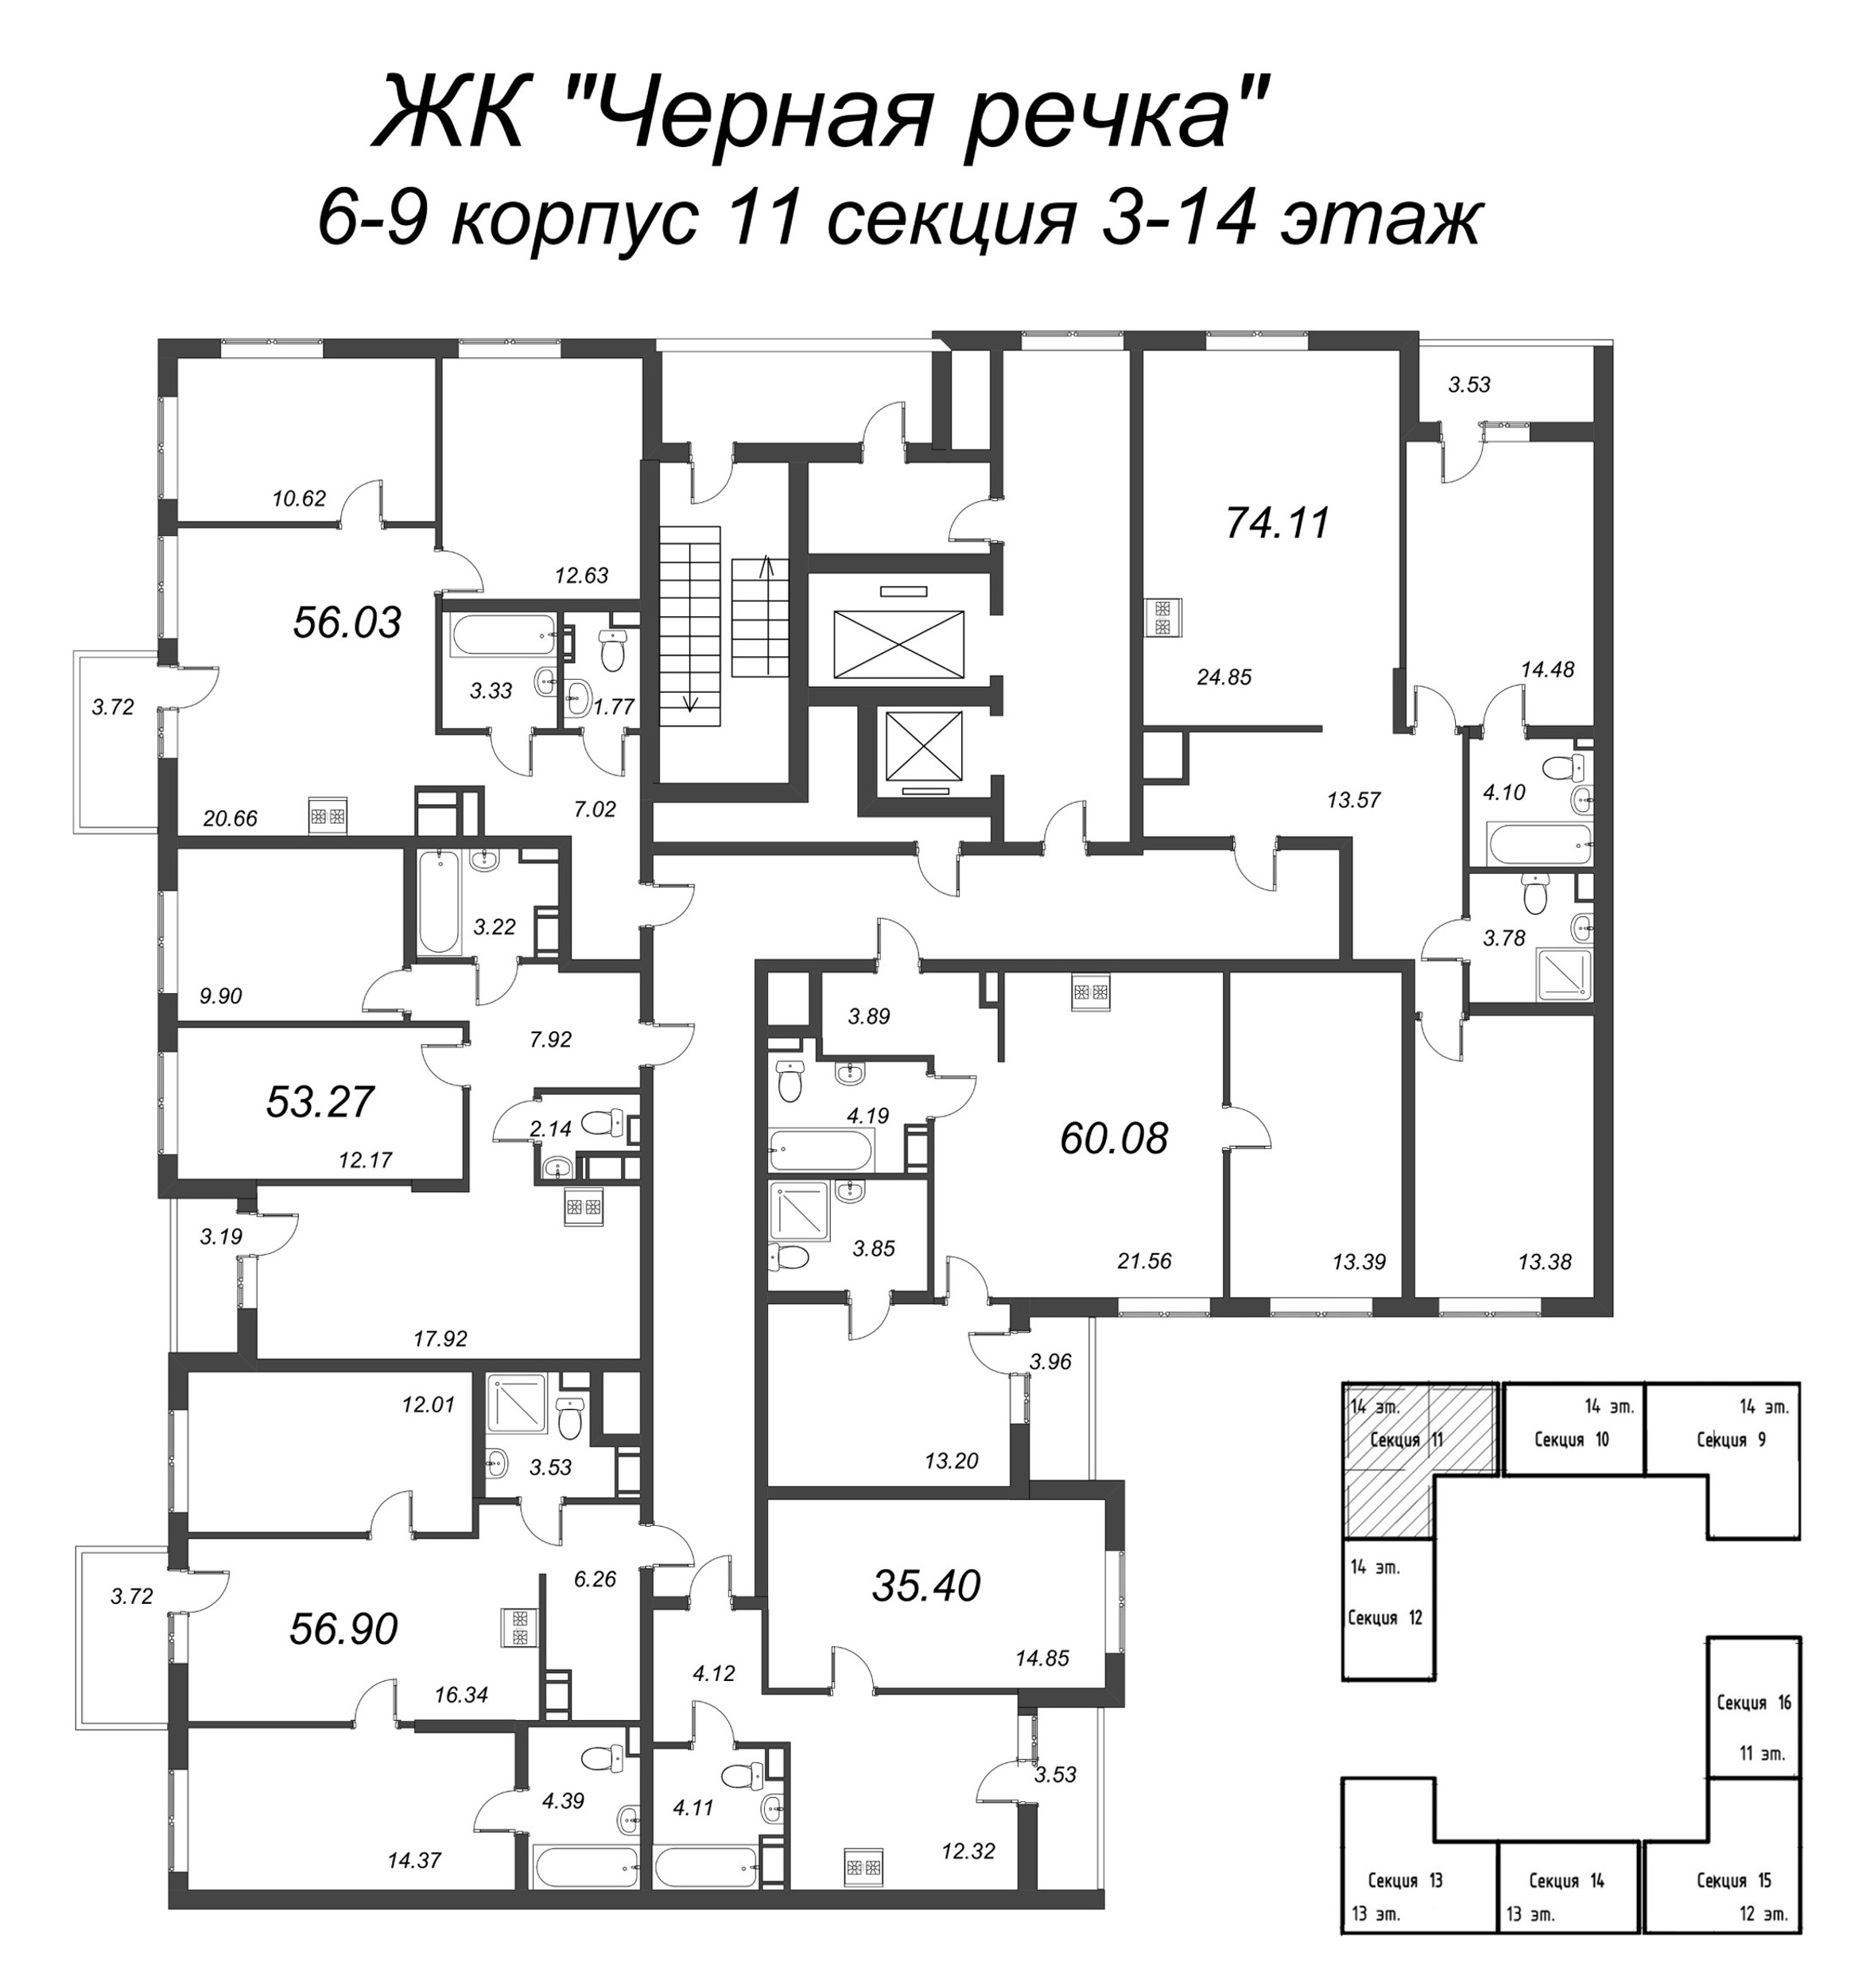 3-комнатная (Евро) квартира, 56.9 м² в ЖК "Чёрная речка" - планировка этажа